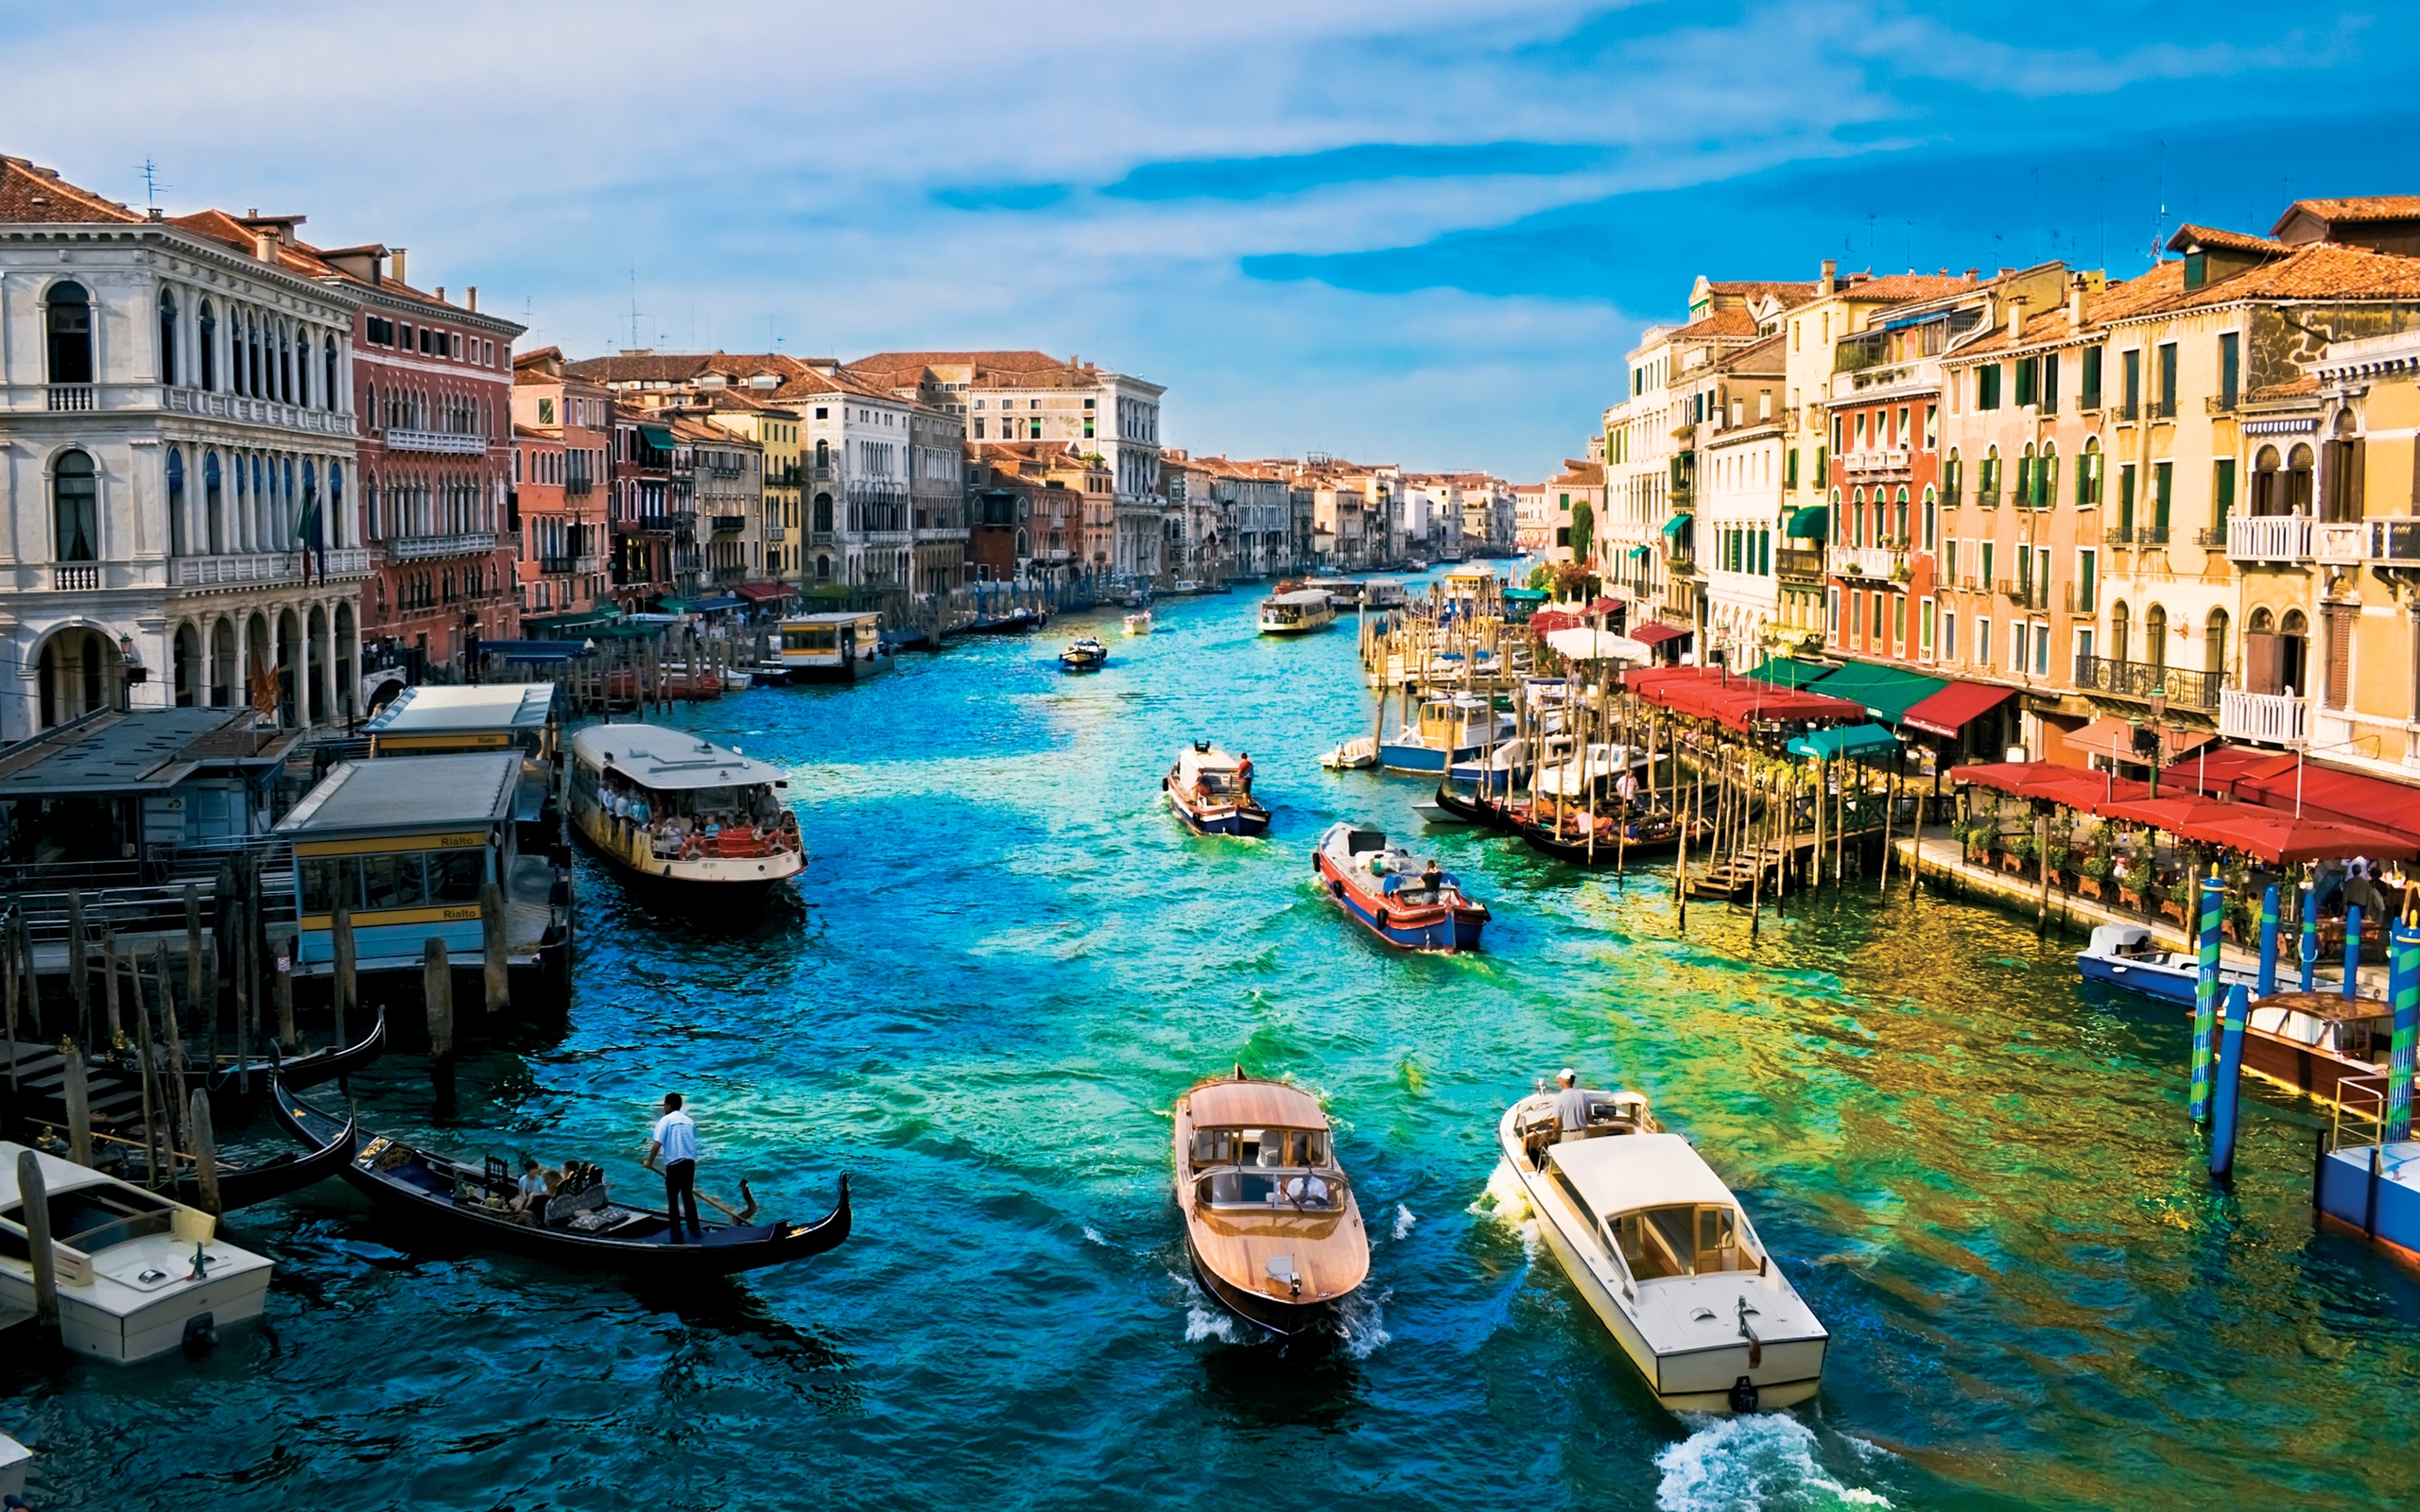 Venice wallpaper desktop high resolution